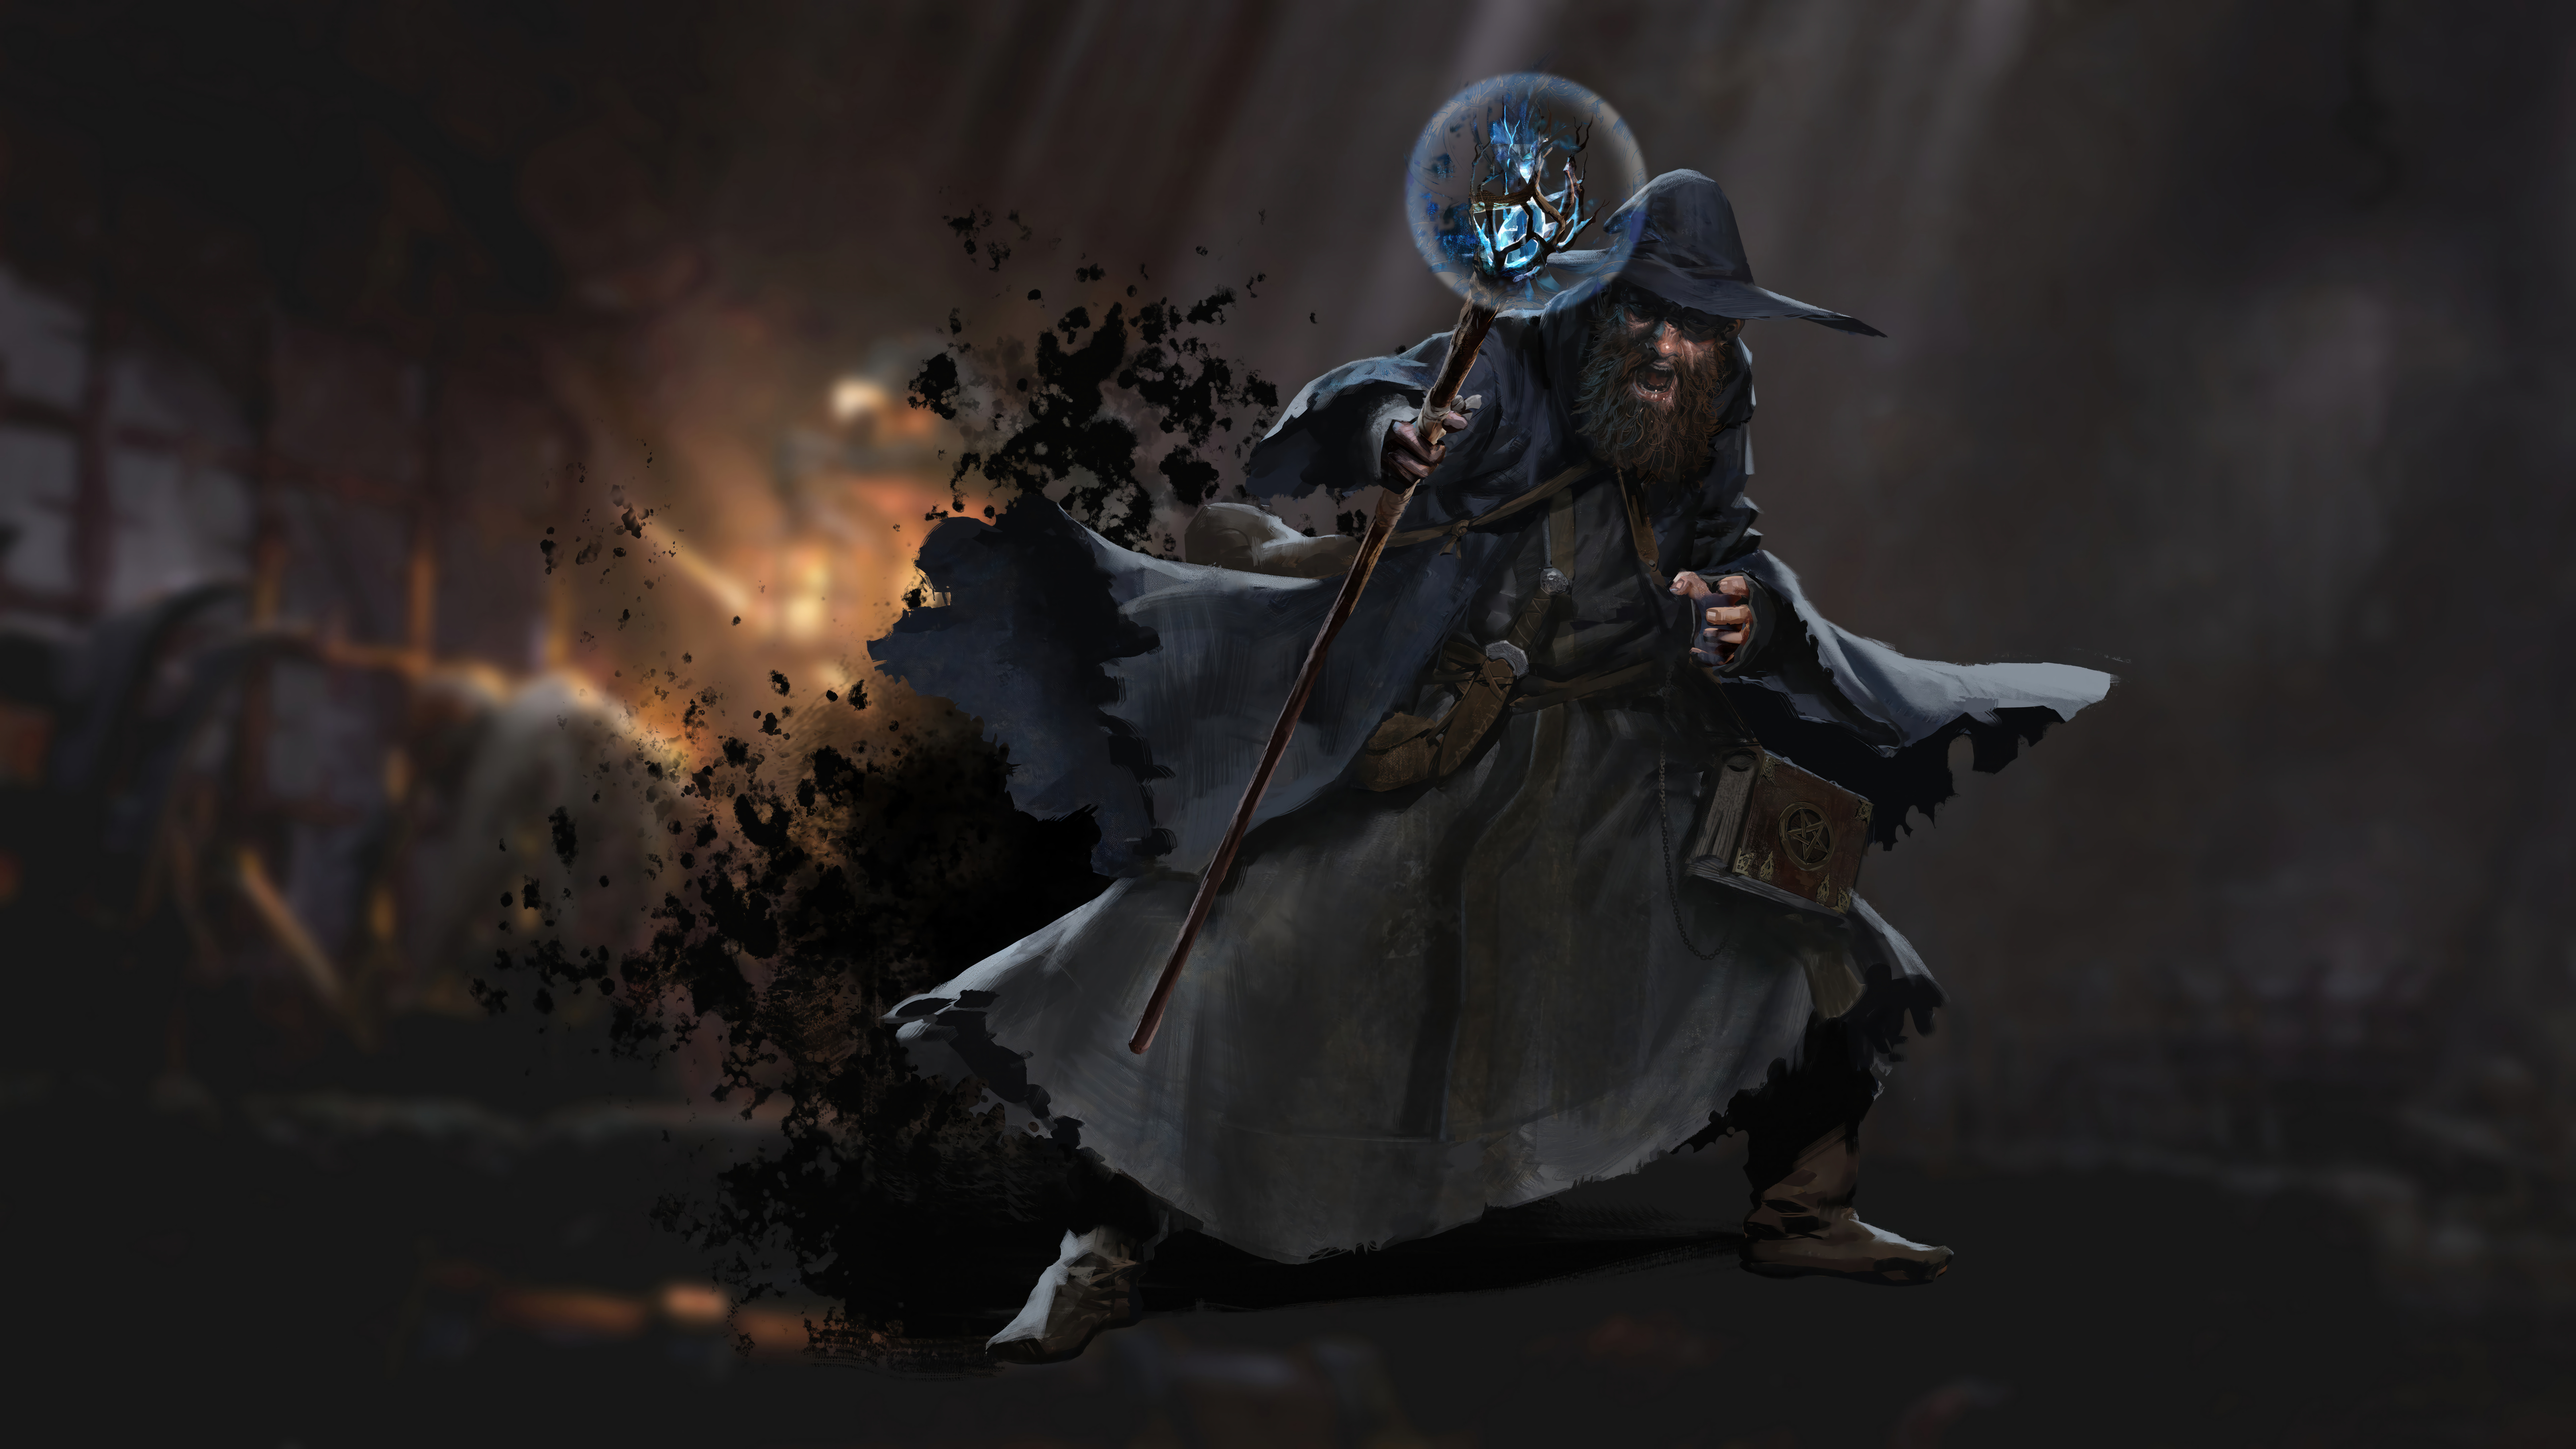 HD desktop wallpaper depicting a wizard from Dark and Darker, wielding magic, set against a shadowy, fiery battle backdrop.